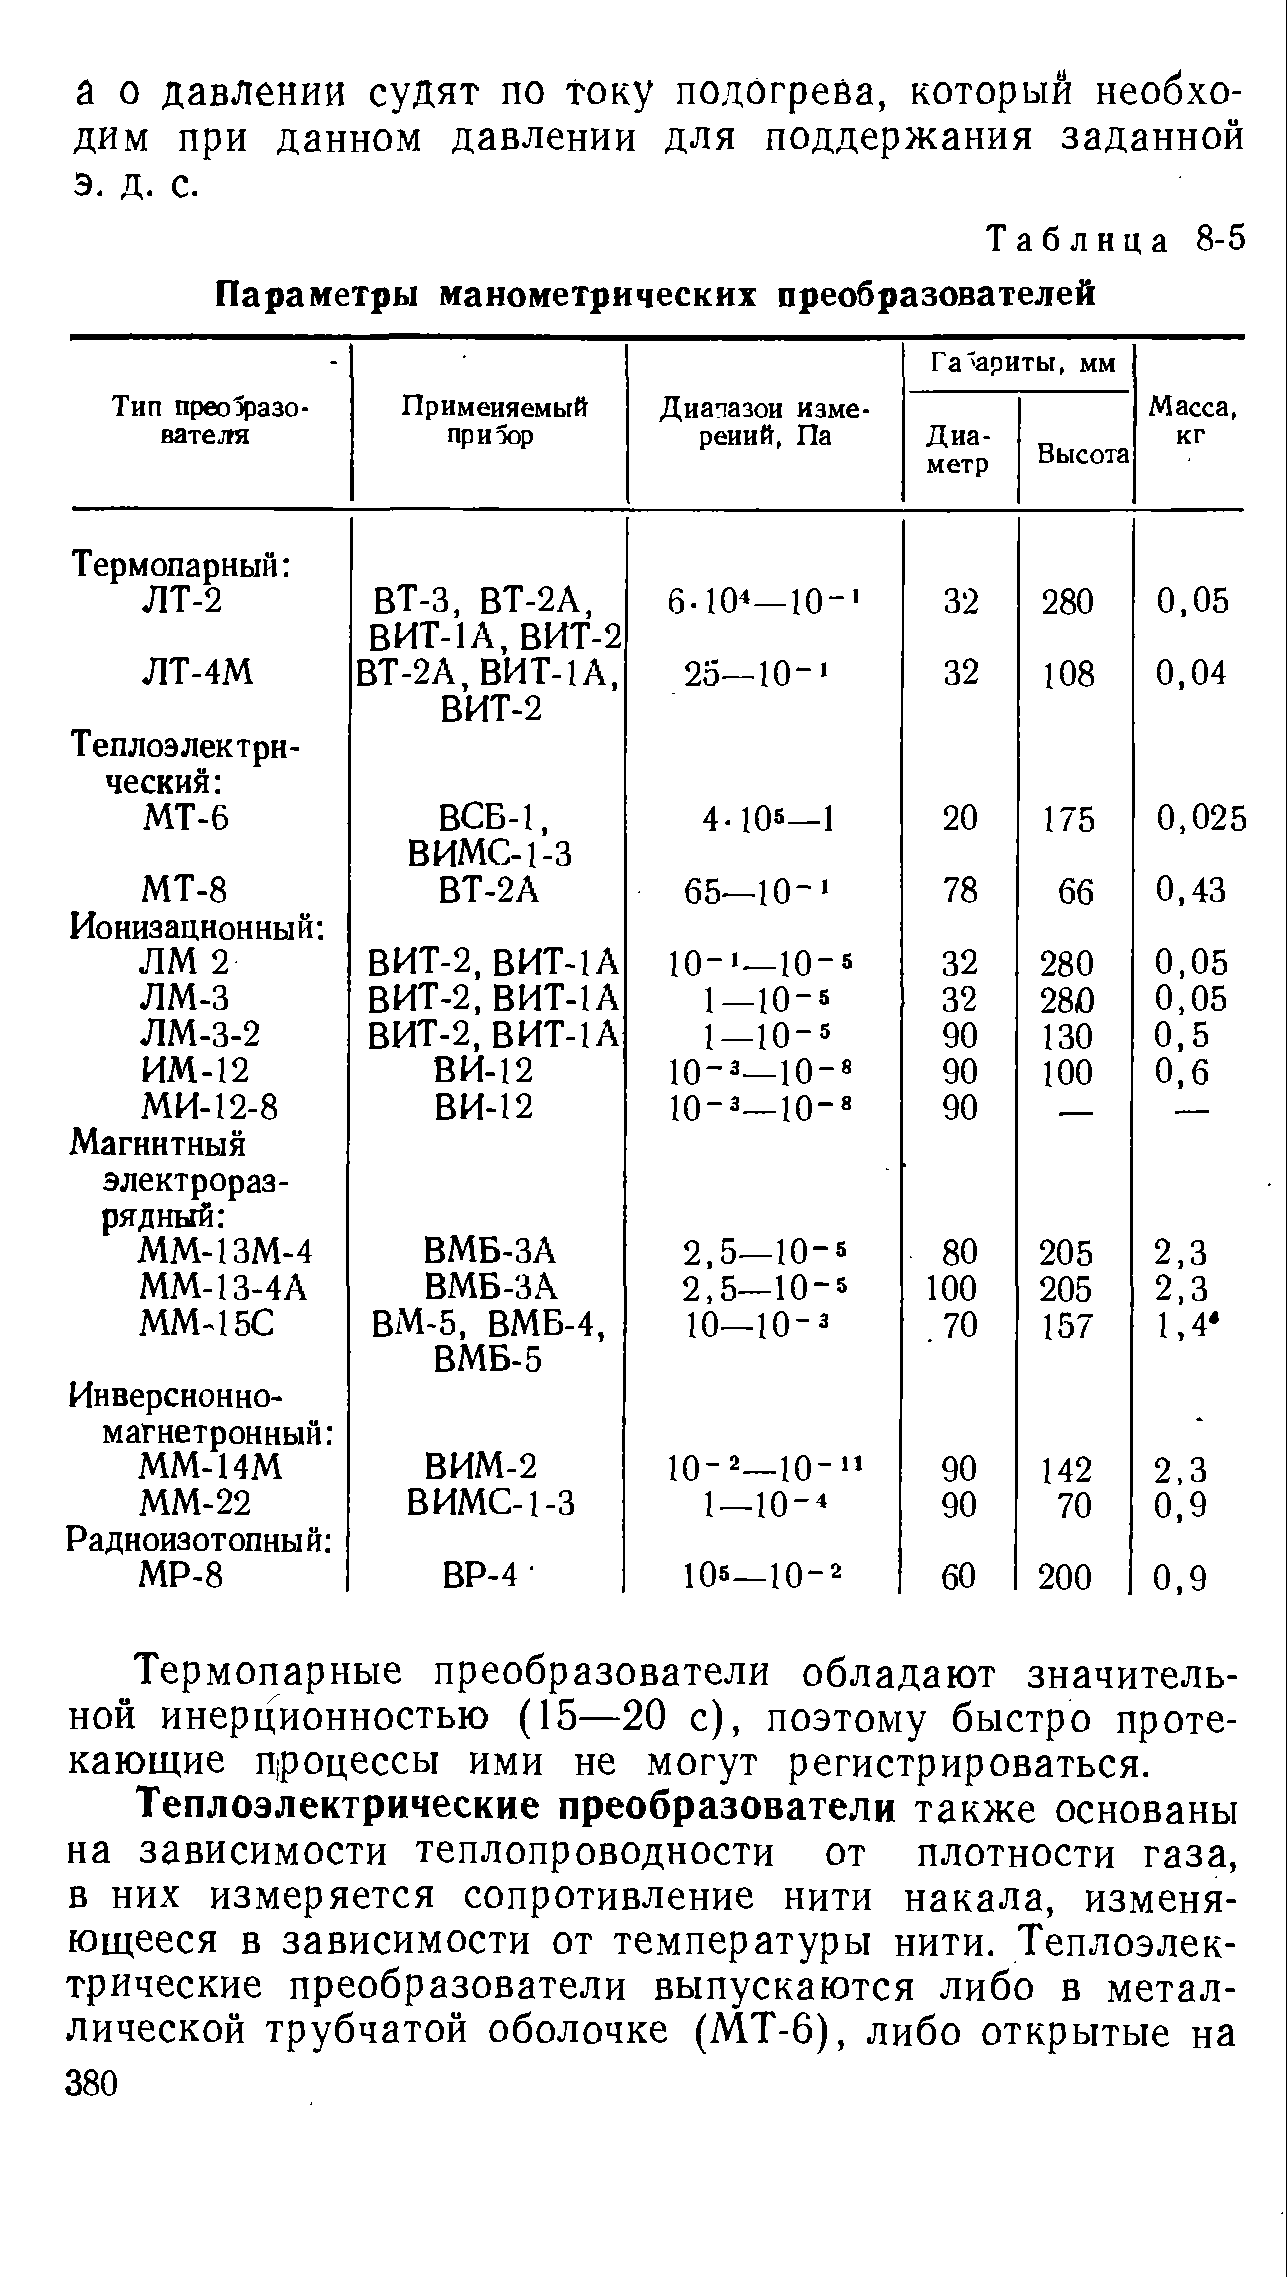 Таблица 8-5 Параметры манометрических преобразователей
